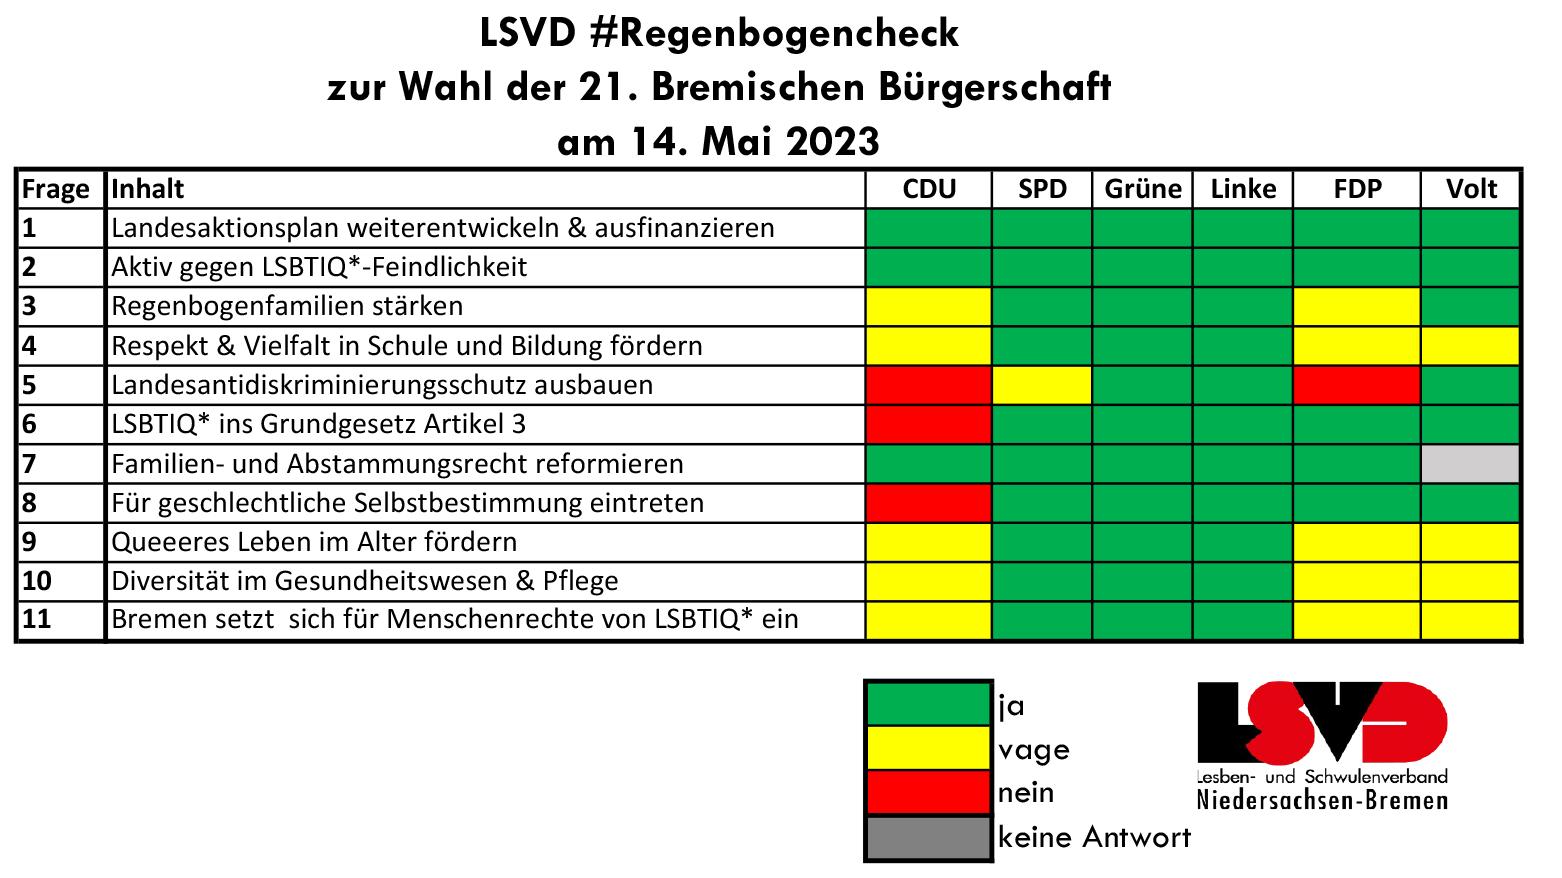 LSVD veröffentlicht Regenbogencheck zur Landtagswahl in Bremen